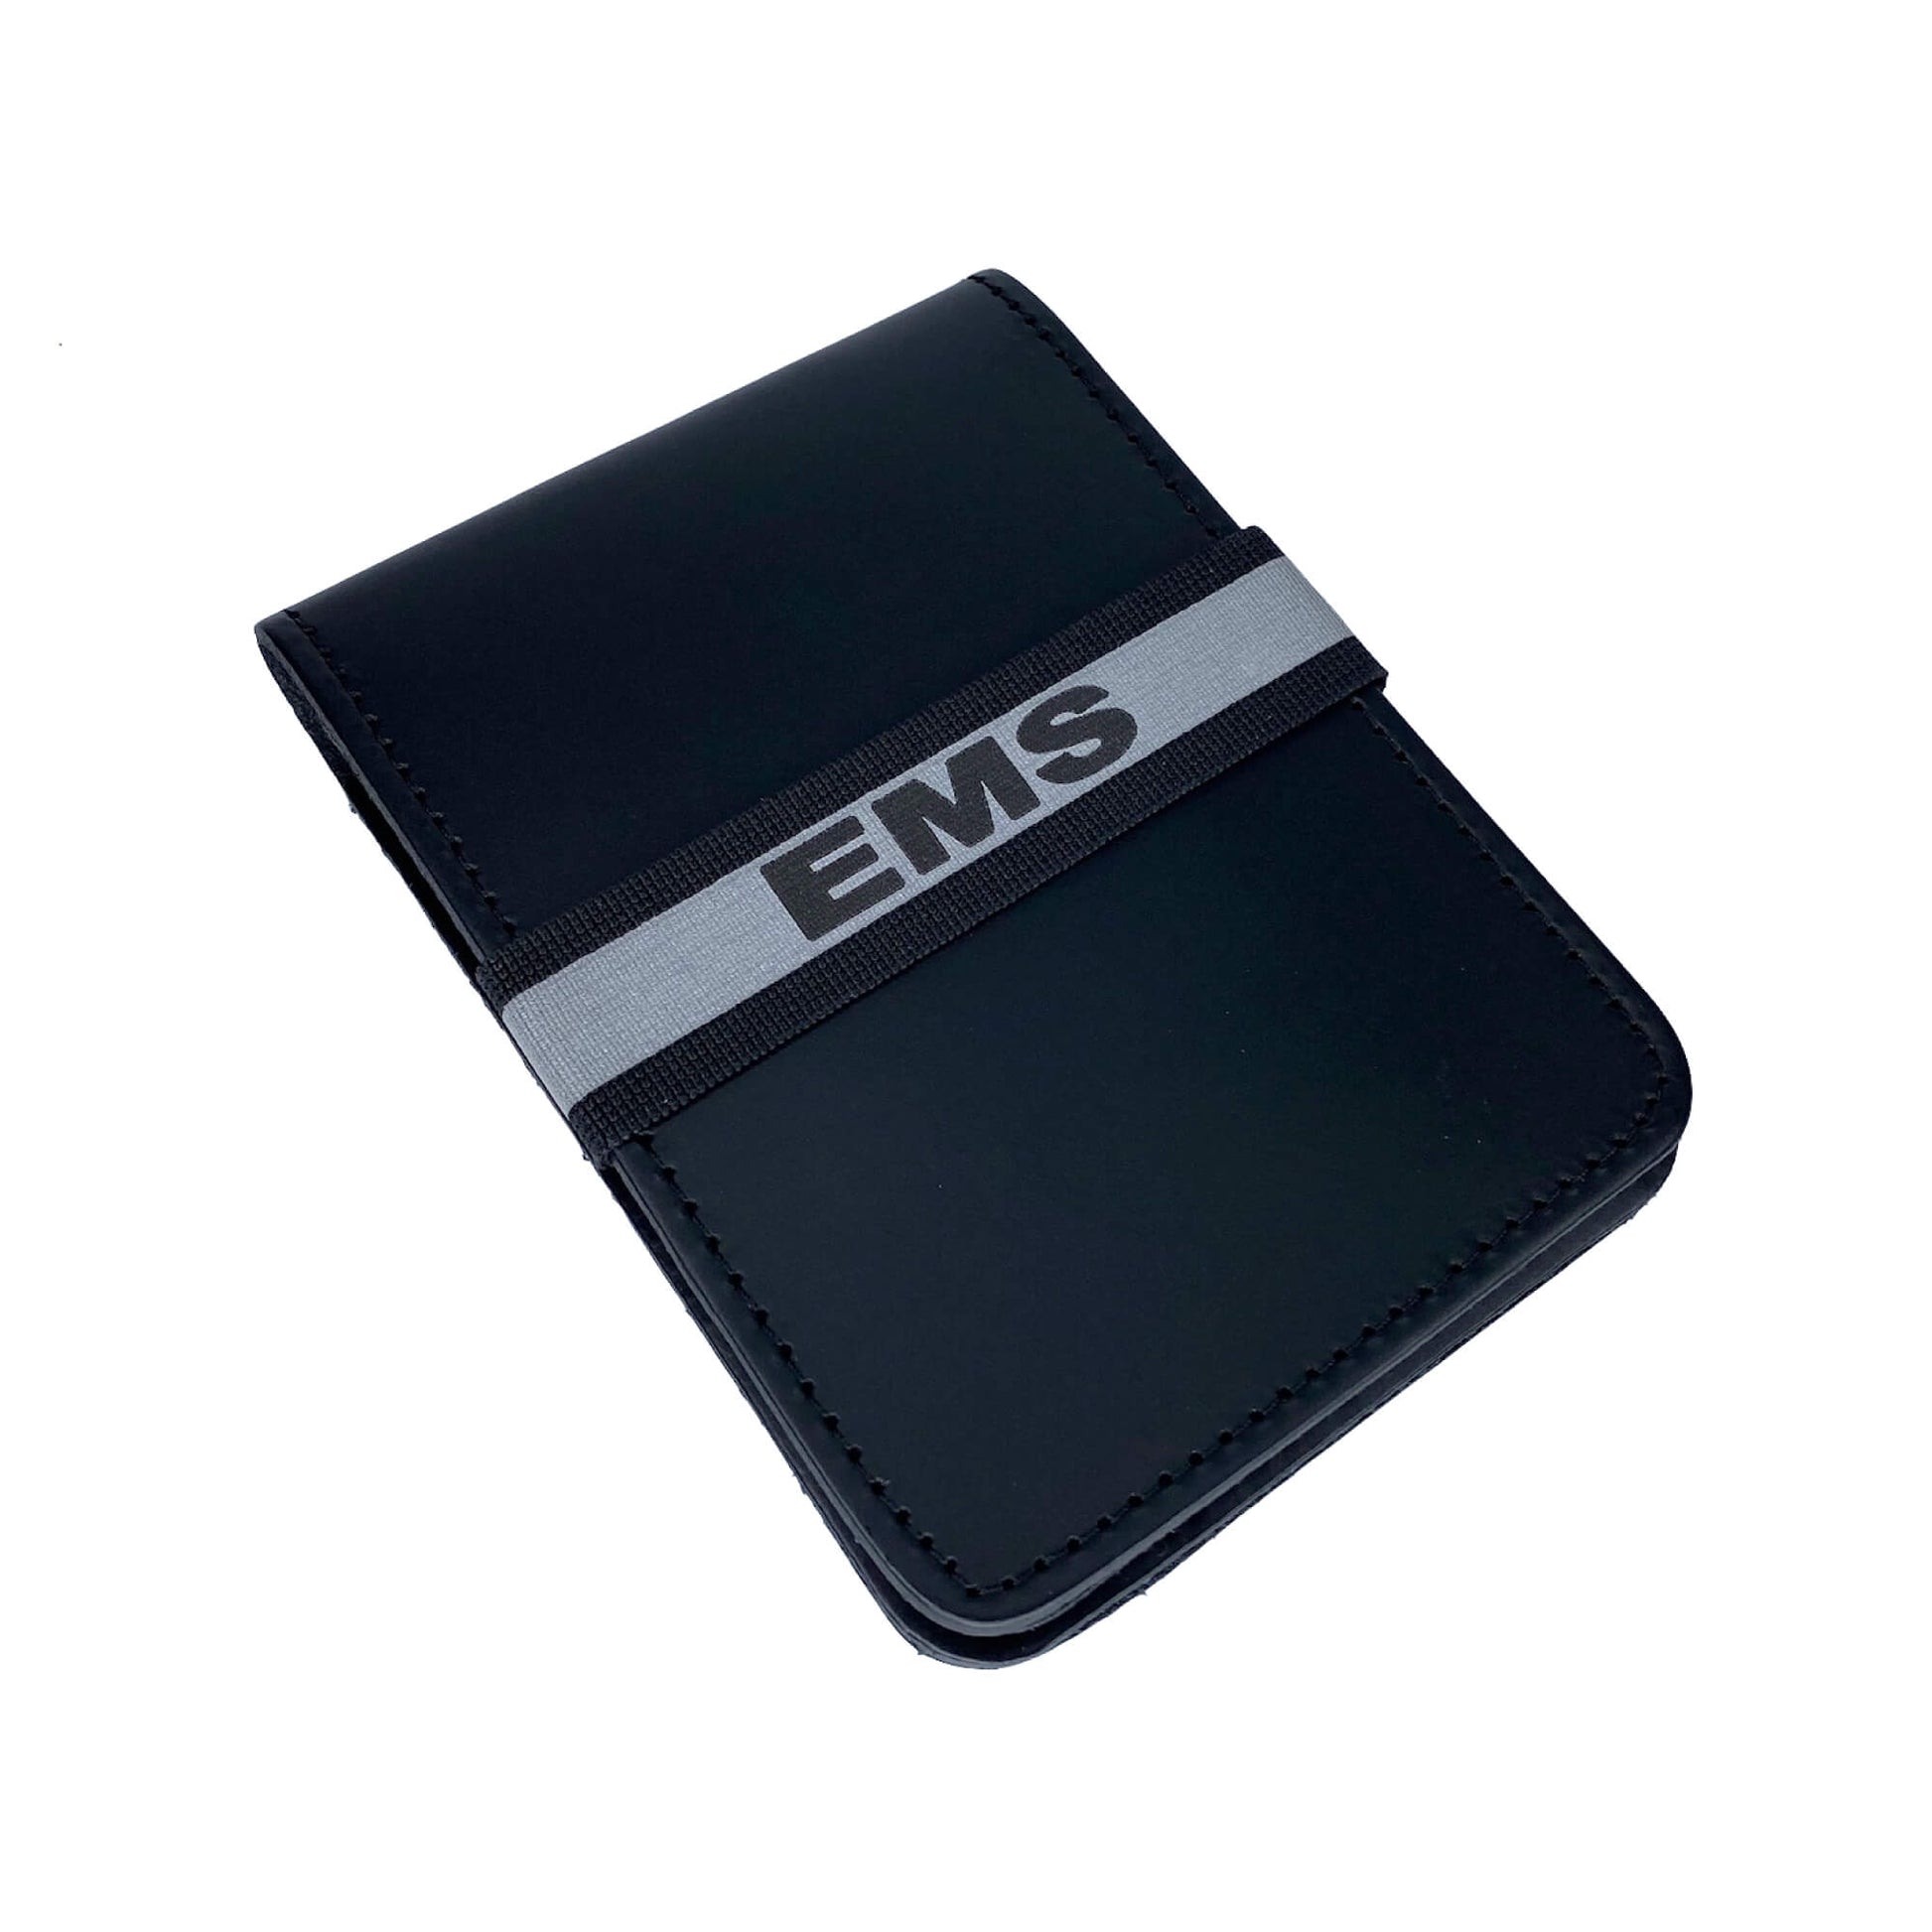 EMS Reflective 3M Notebook ID Band-911 Duty Gear USA-911 Duty Gear USA